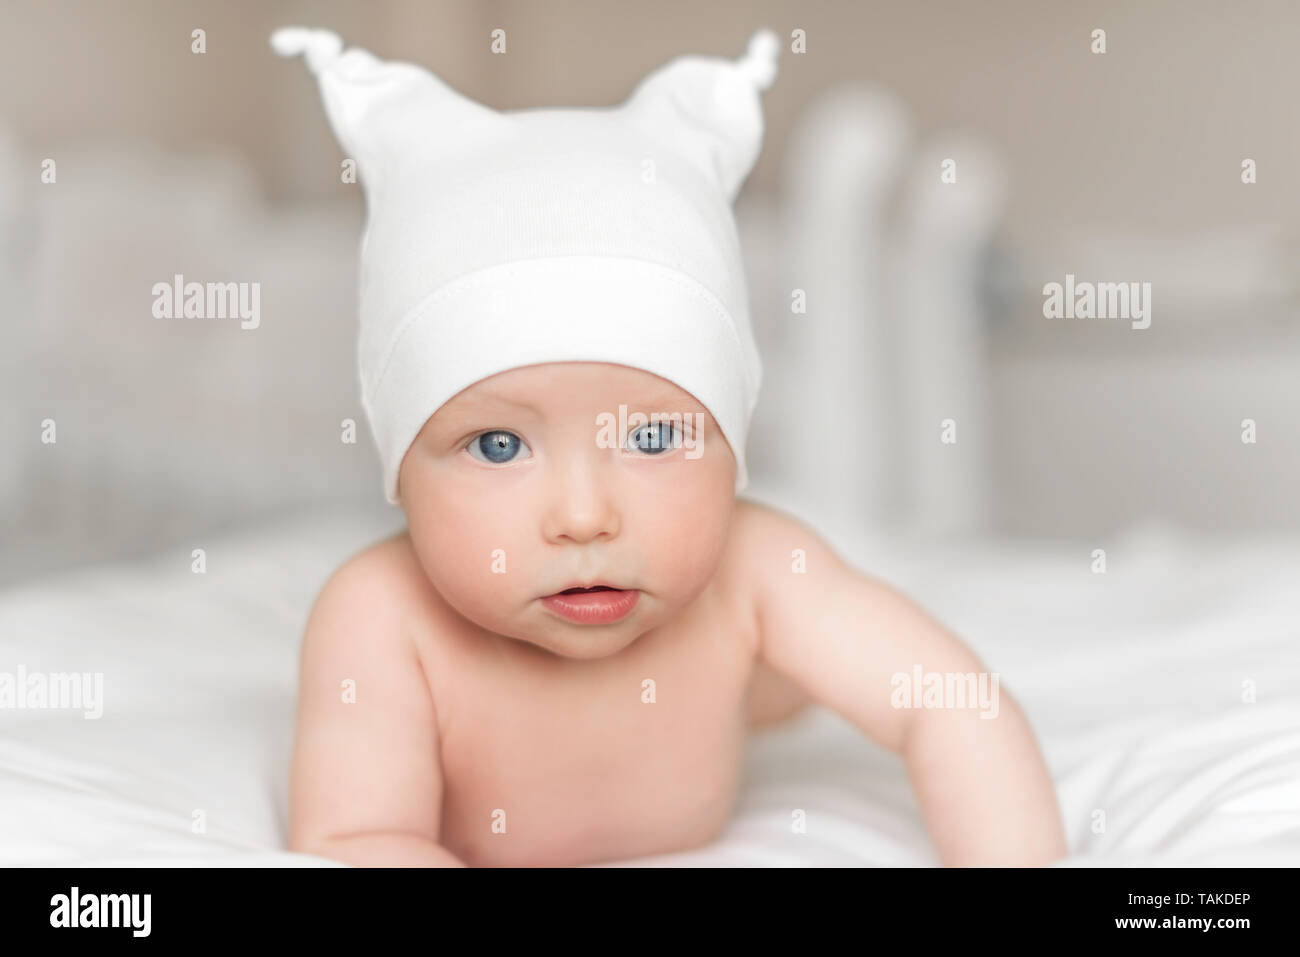 Beautiful newborn baby girl. Stock Photo